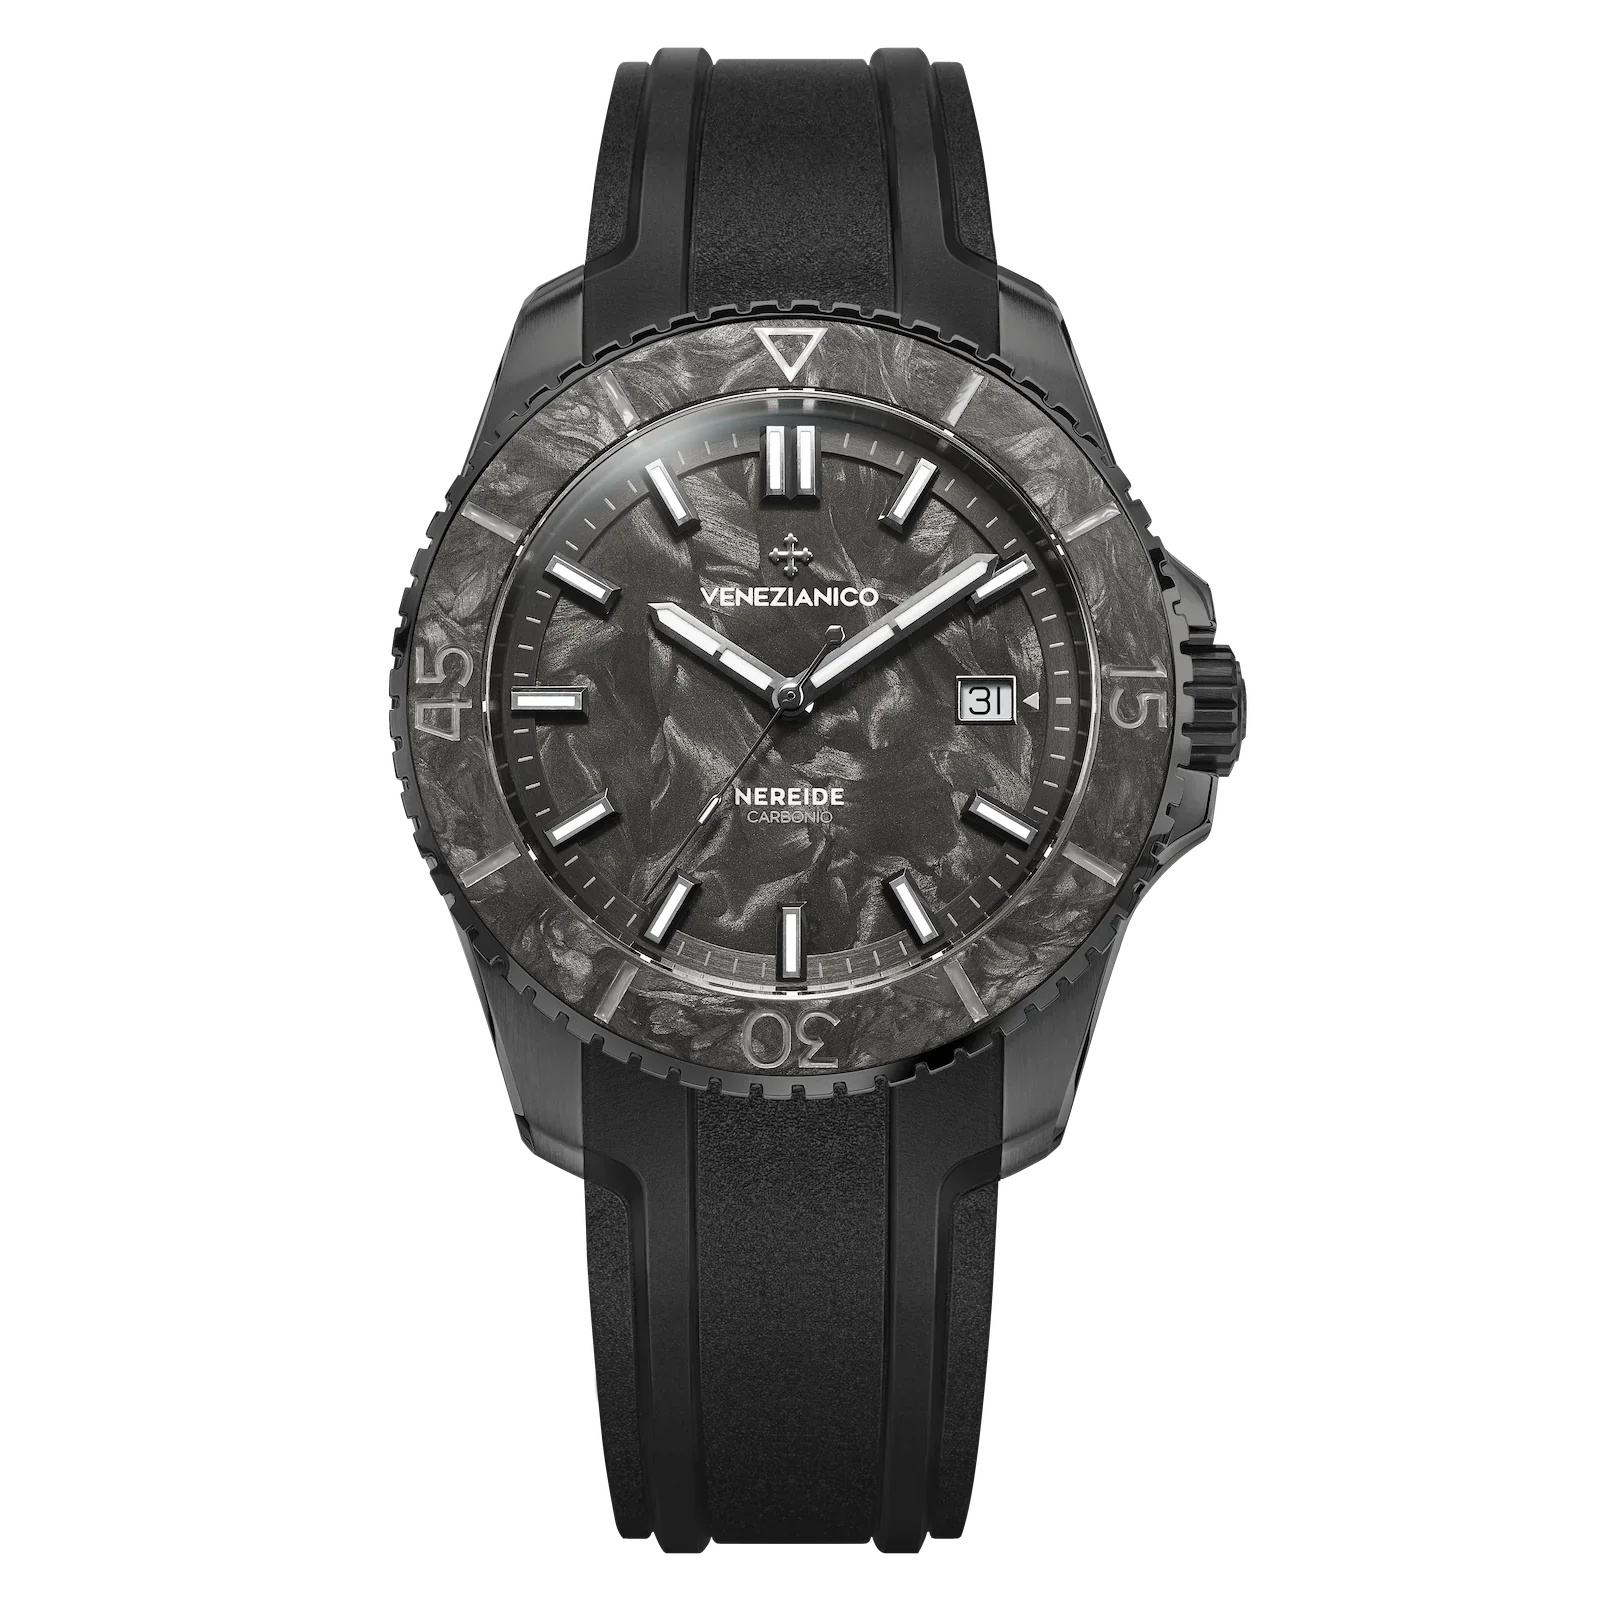 Venezianico Nereide Carbonio Grey Men's Watch 4521560